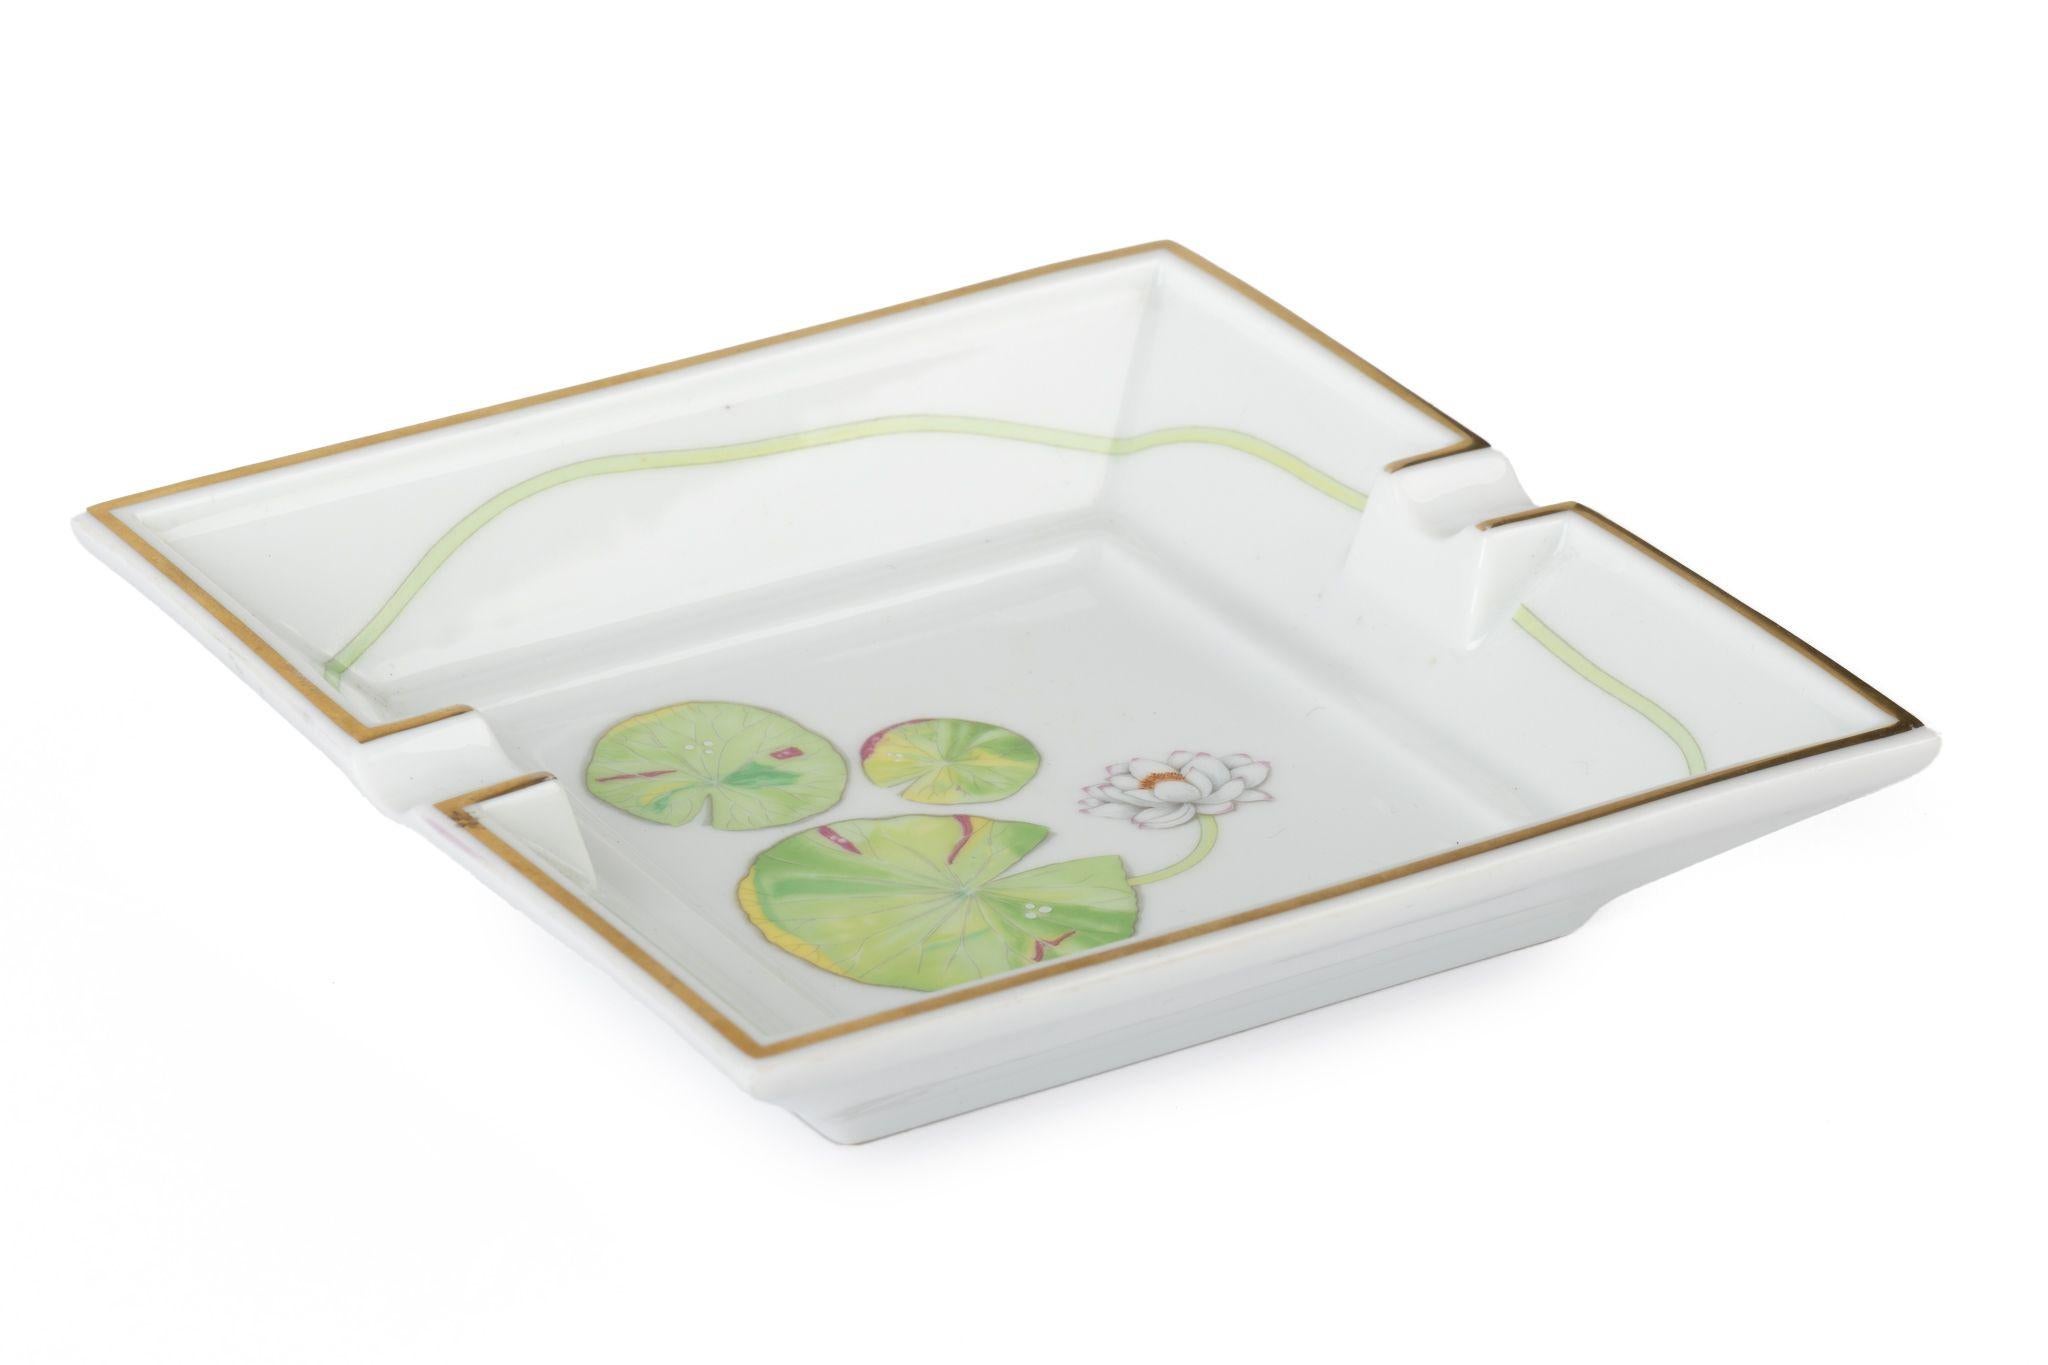 Aschenbecher mit Hermès-Signatur aus weißem Porzellan mit Wasserlilienmotiv in Weiß und Grün.